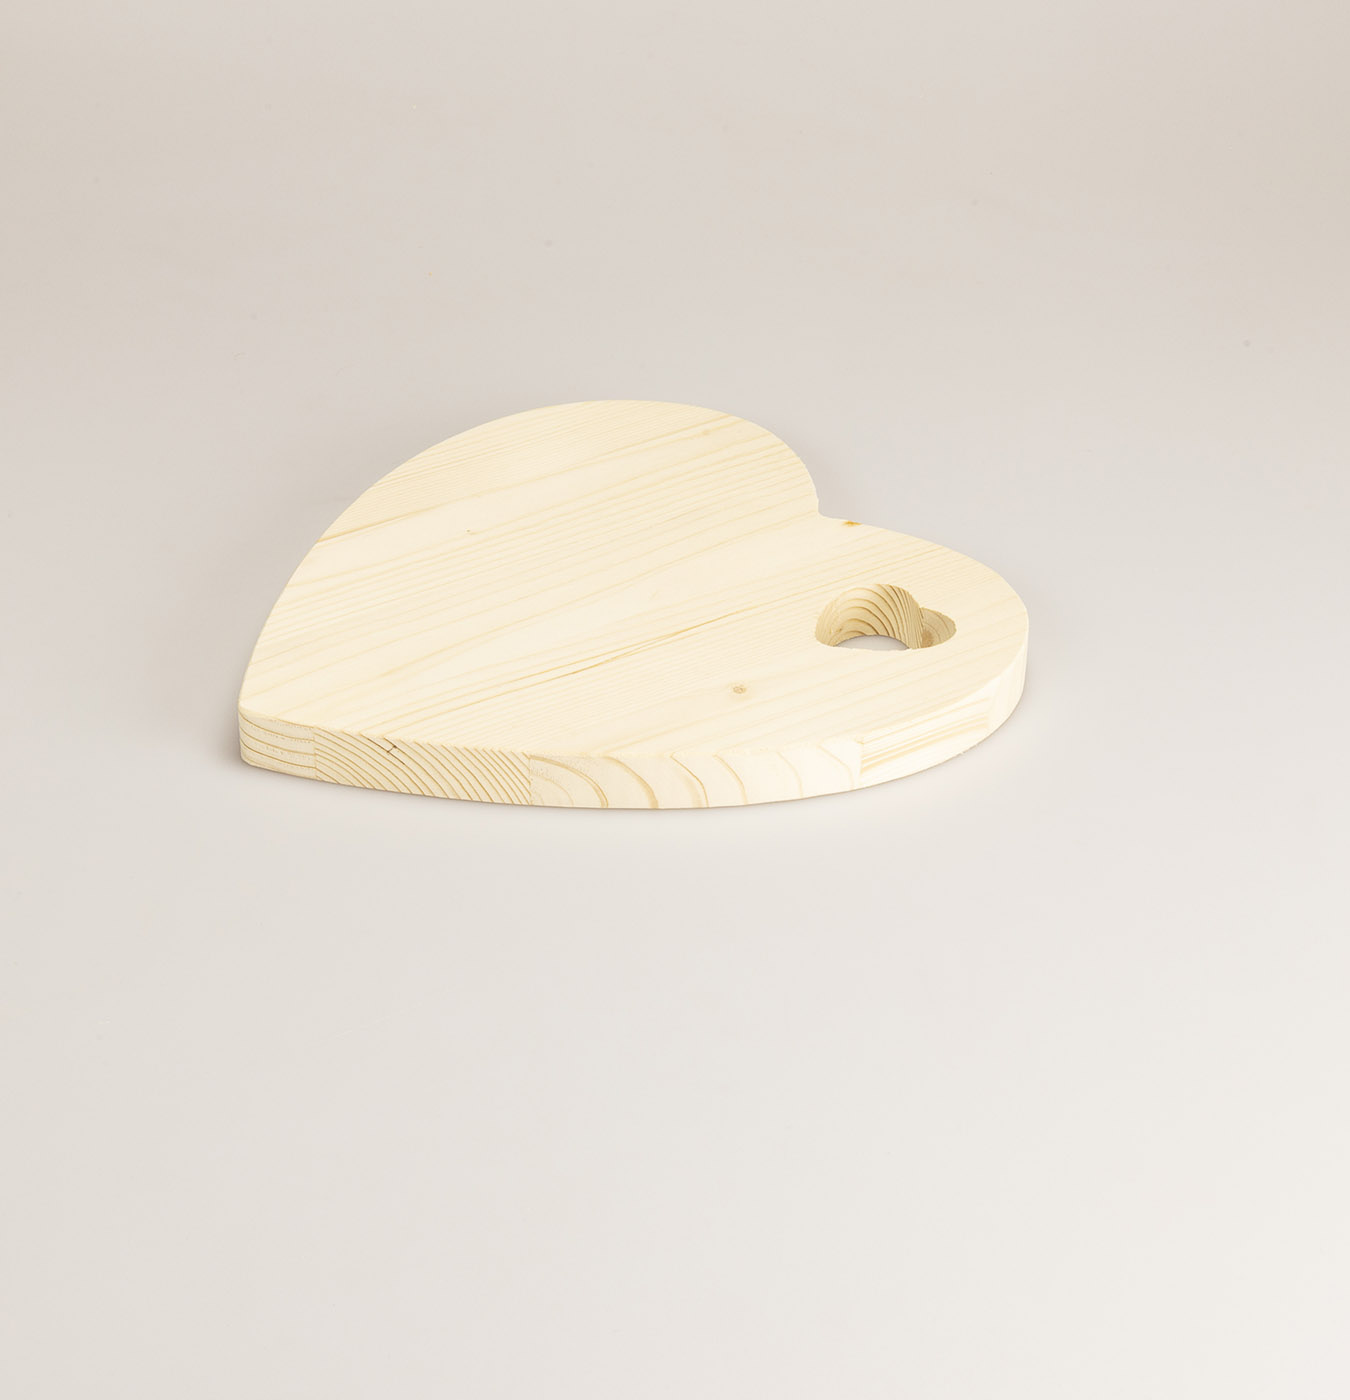 Tagliere da cucina a forma di cuore in legno di abete. Può essere utilizzato anche come vassoio da portata.